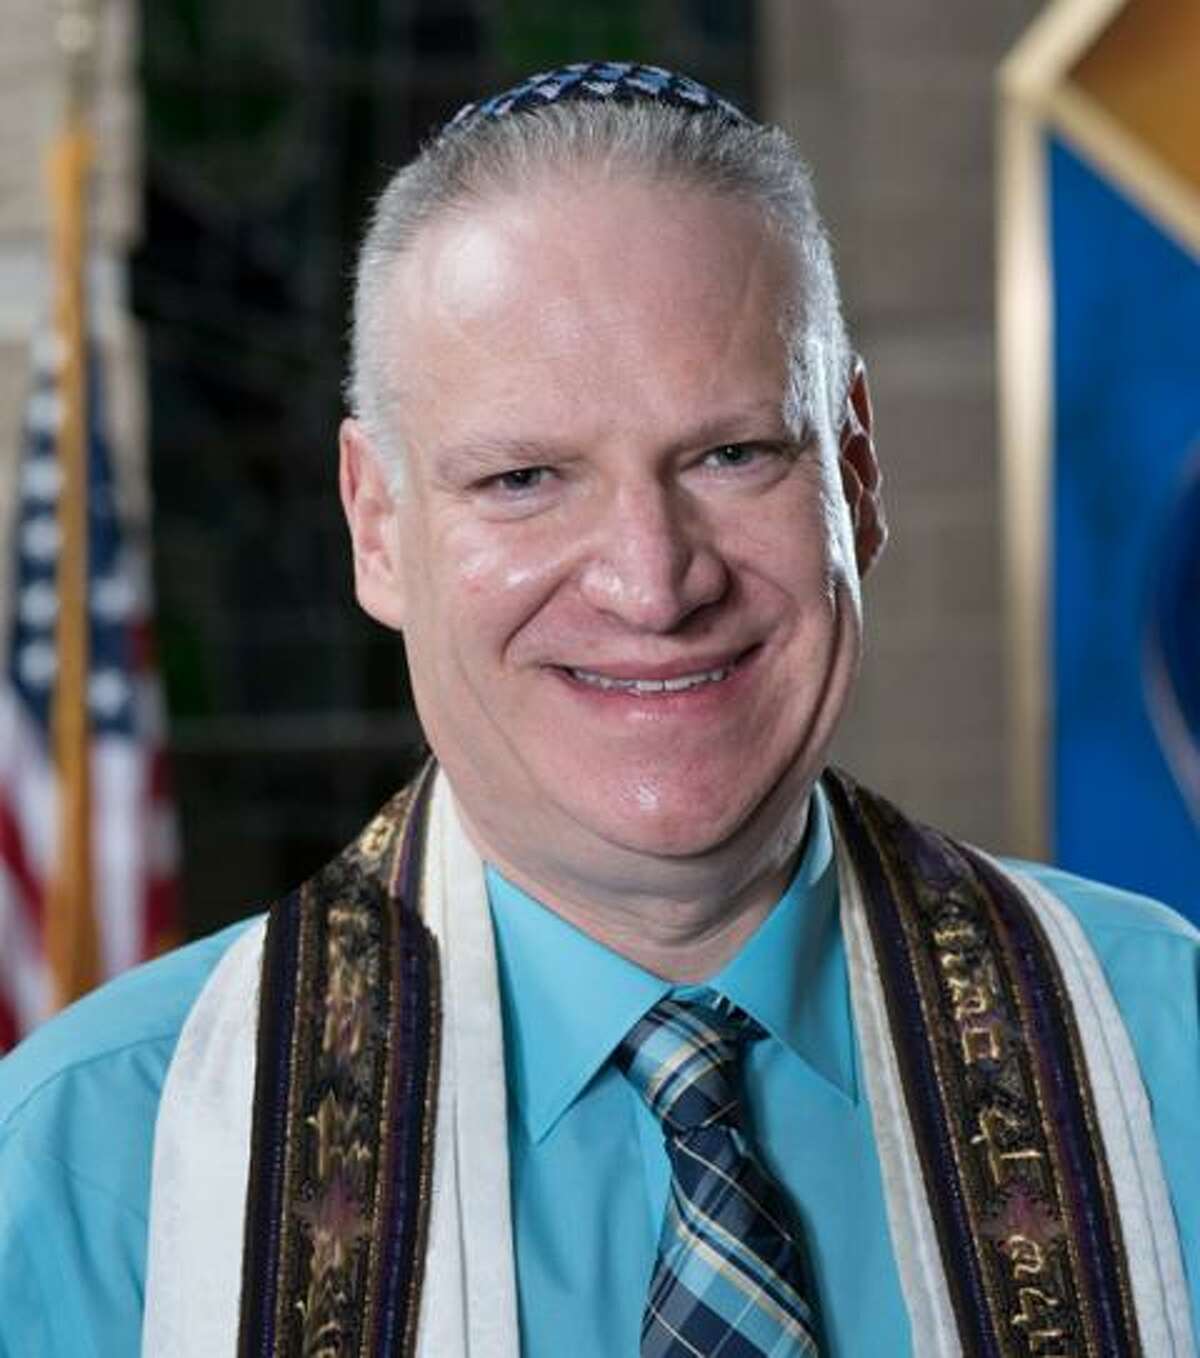 updated 2017 photo of the rabbi Mitchell Hurvitz.